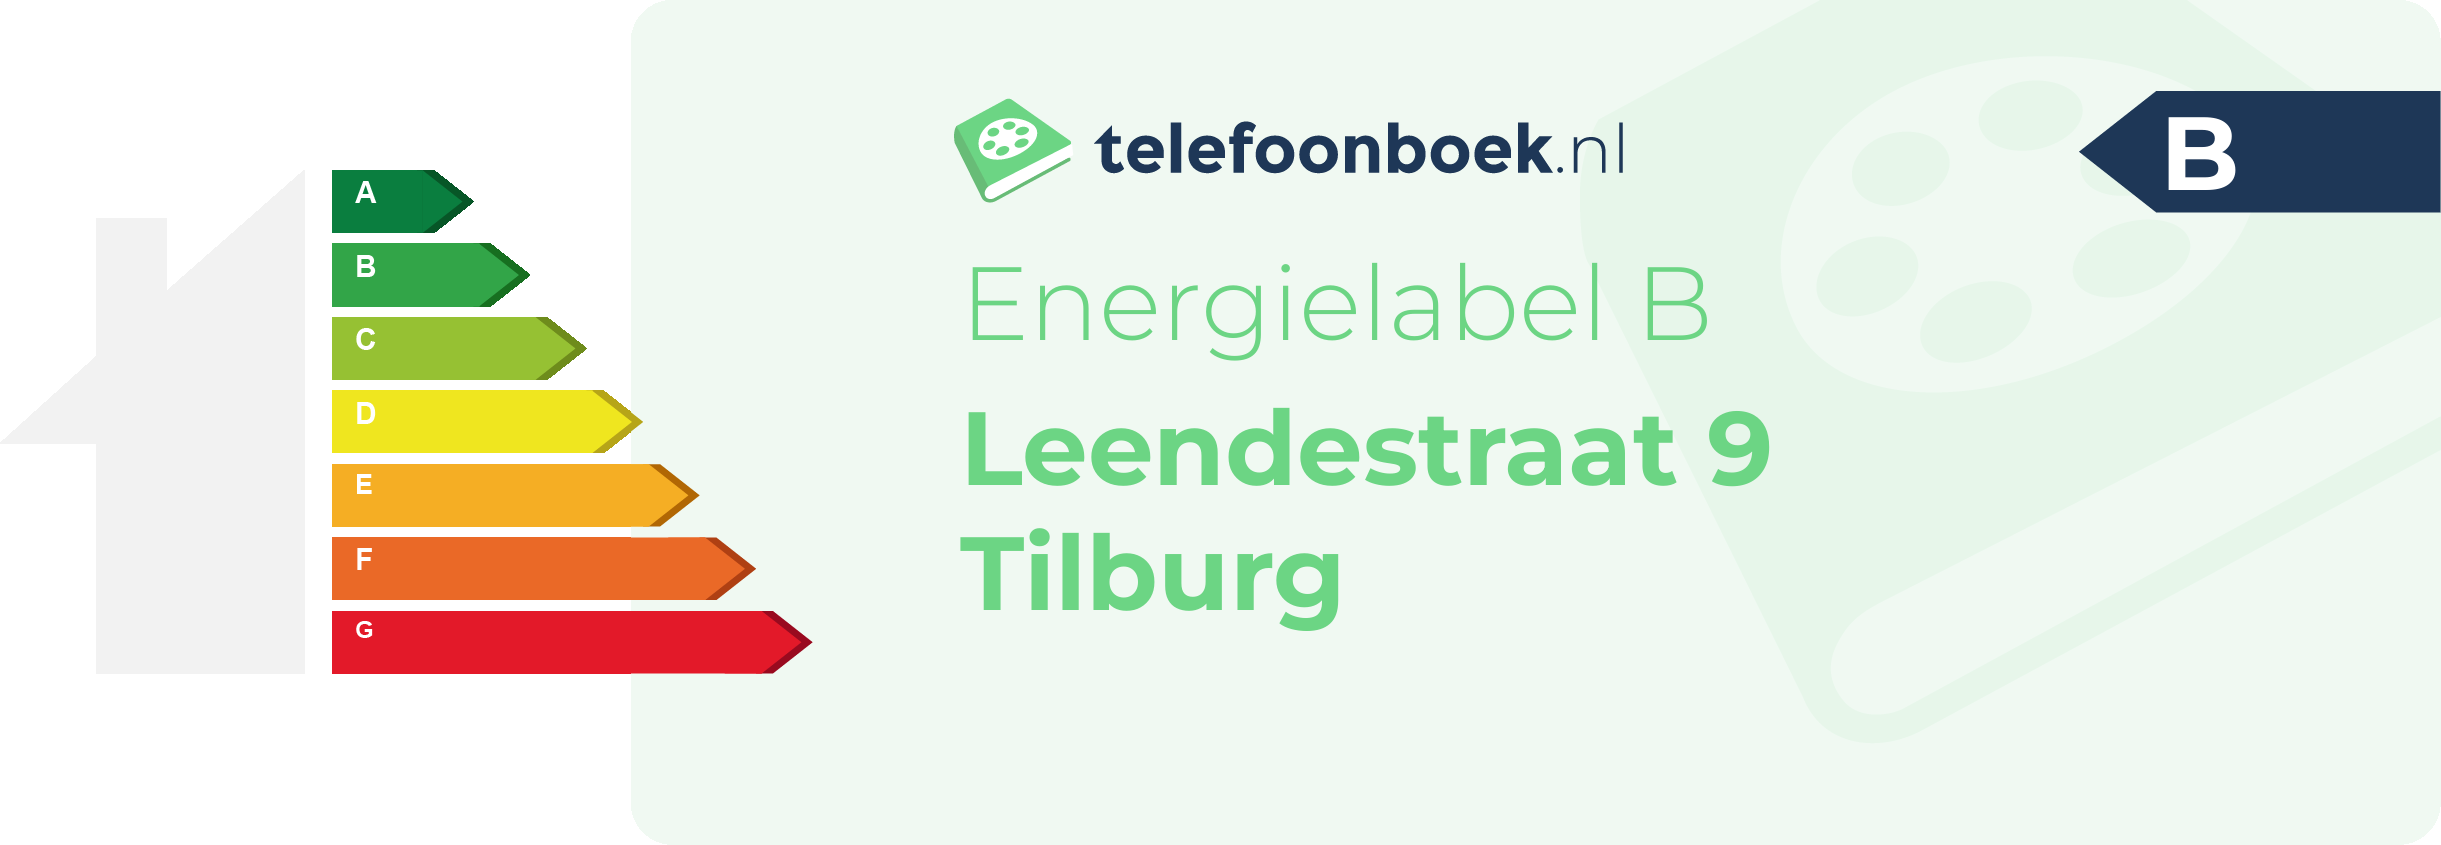 Energielabel Leendestraat 9 Tilburg